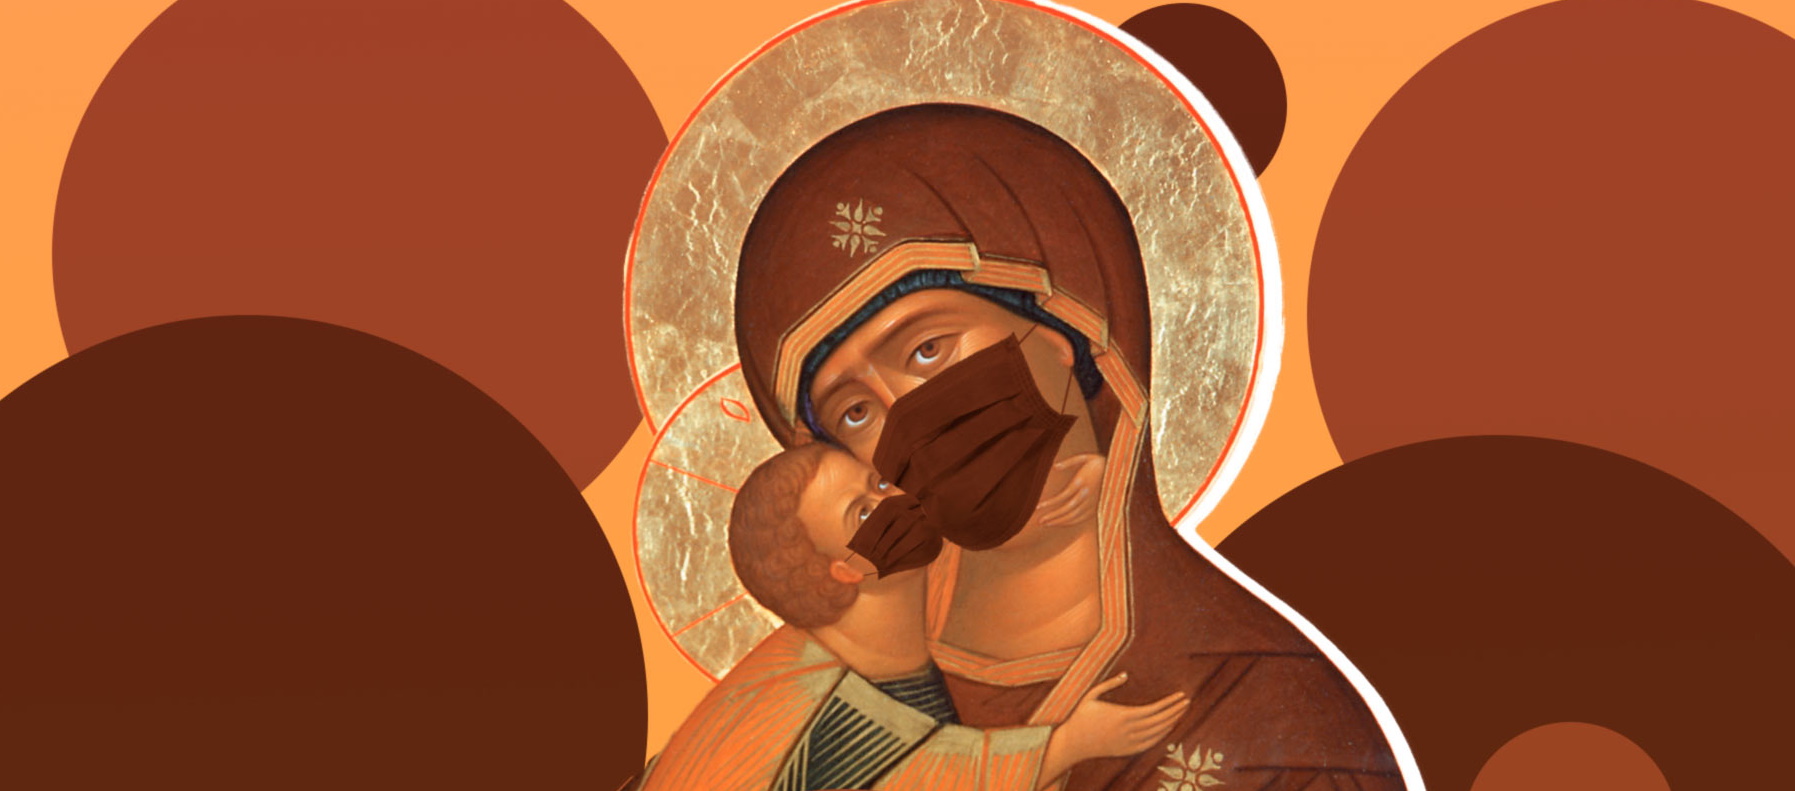 "Жуткий признак COVID-19": в России на иконе Богородицы появилась защитная маска